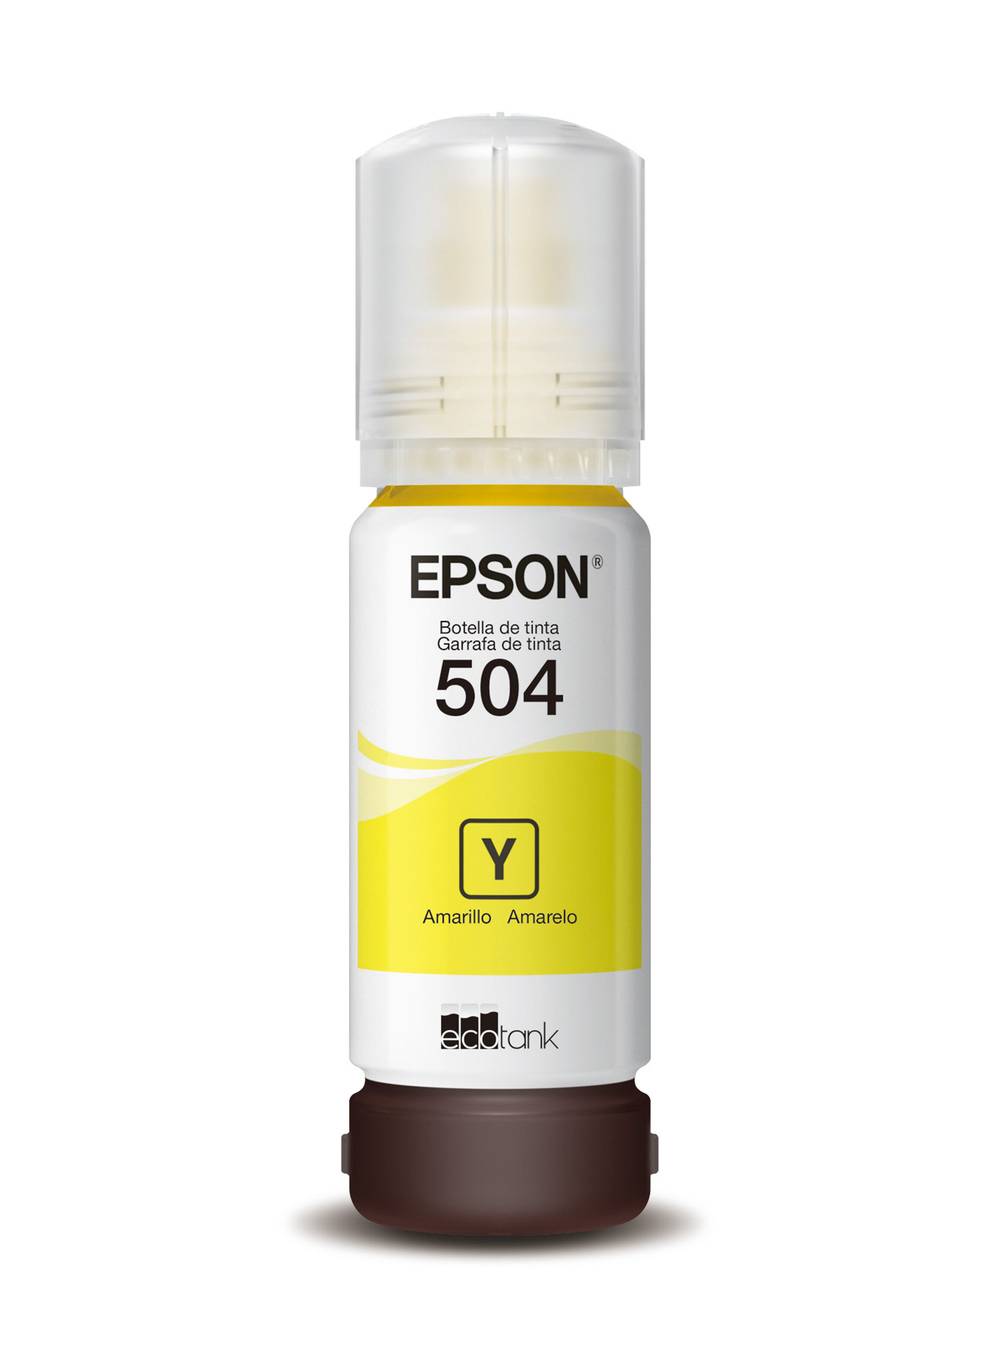 Epson botella tinta t504420 yellow (70 ml)